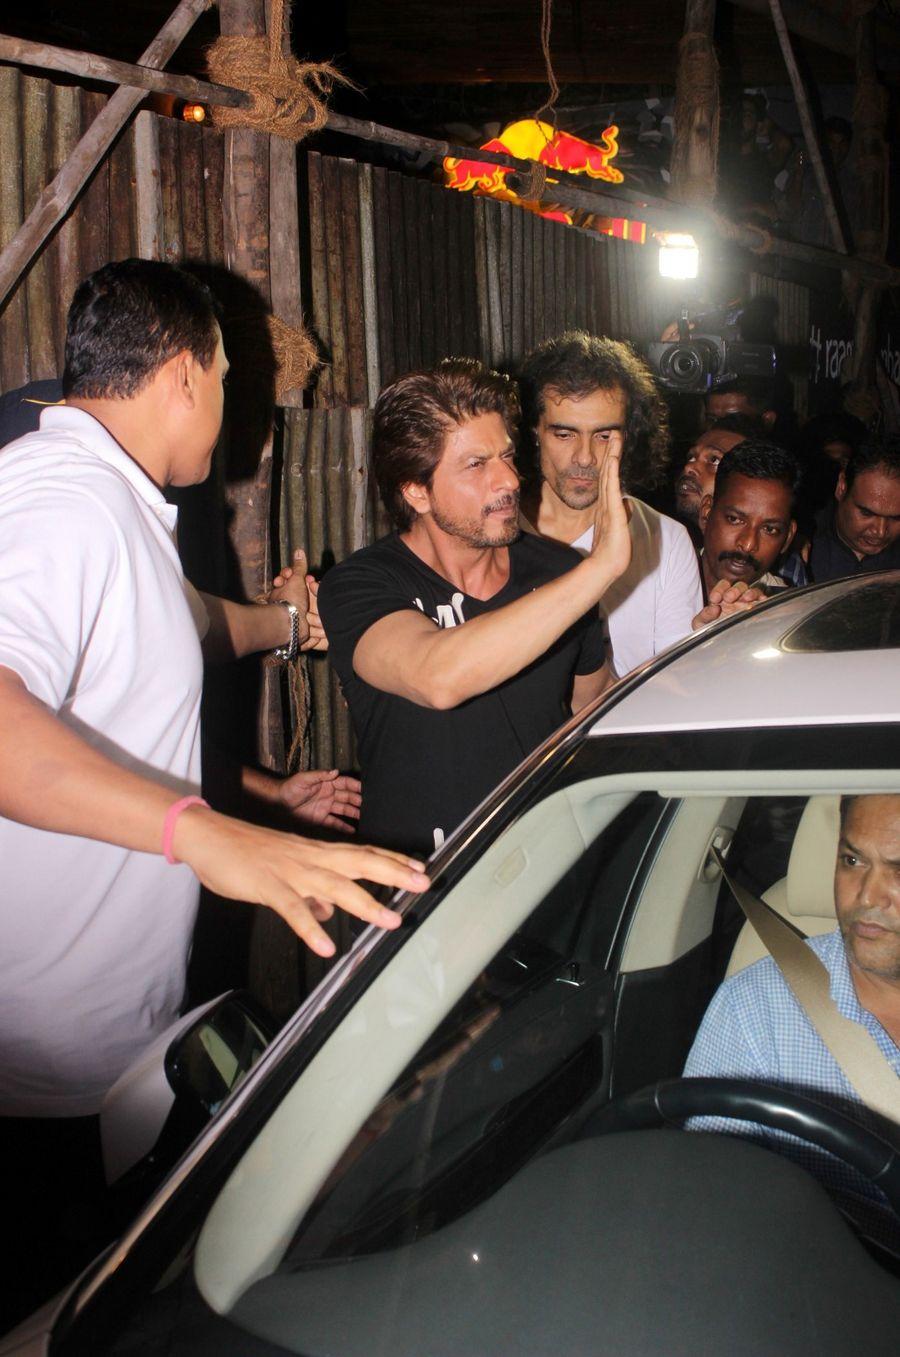 Shah Rukh Khan & Anushka Sharma Spotted at Khar Social Photos